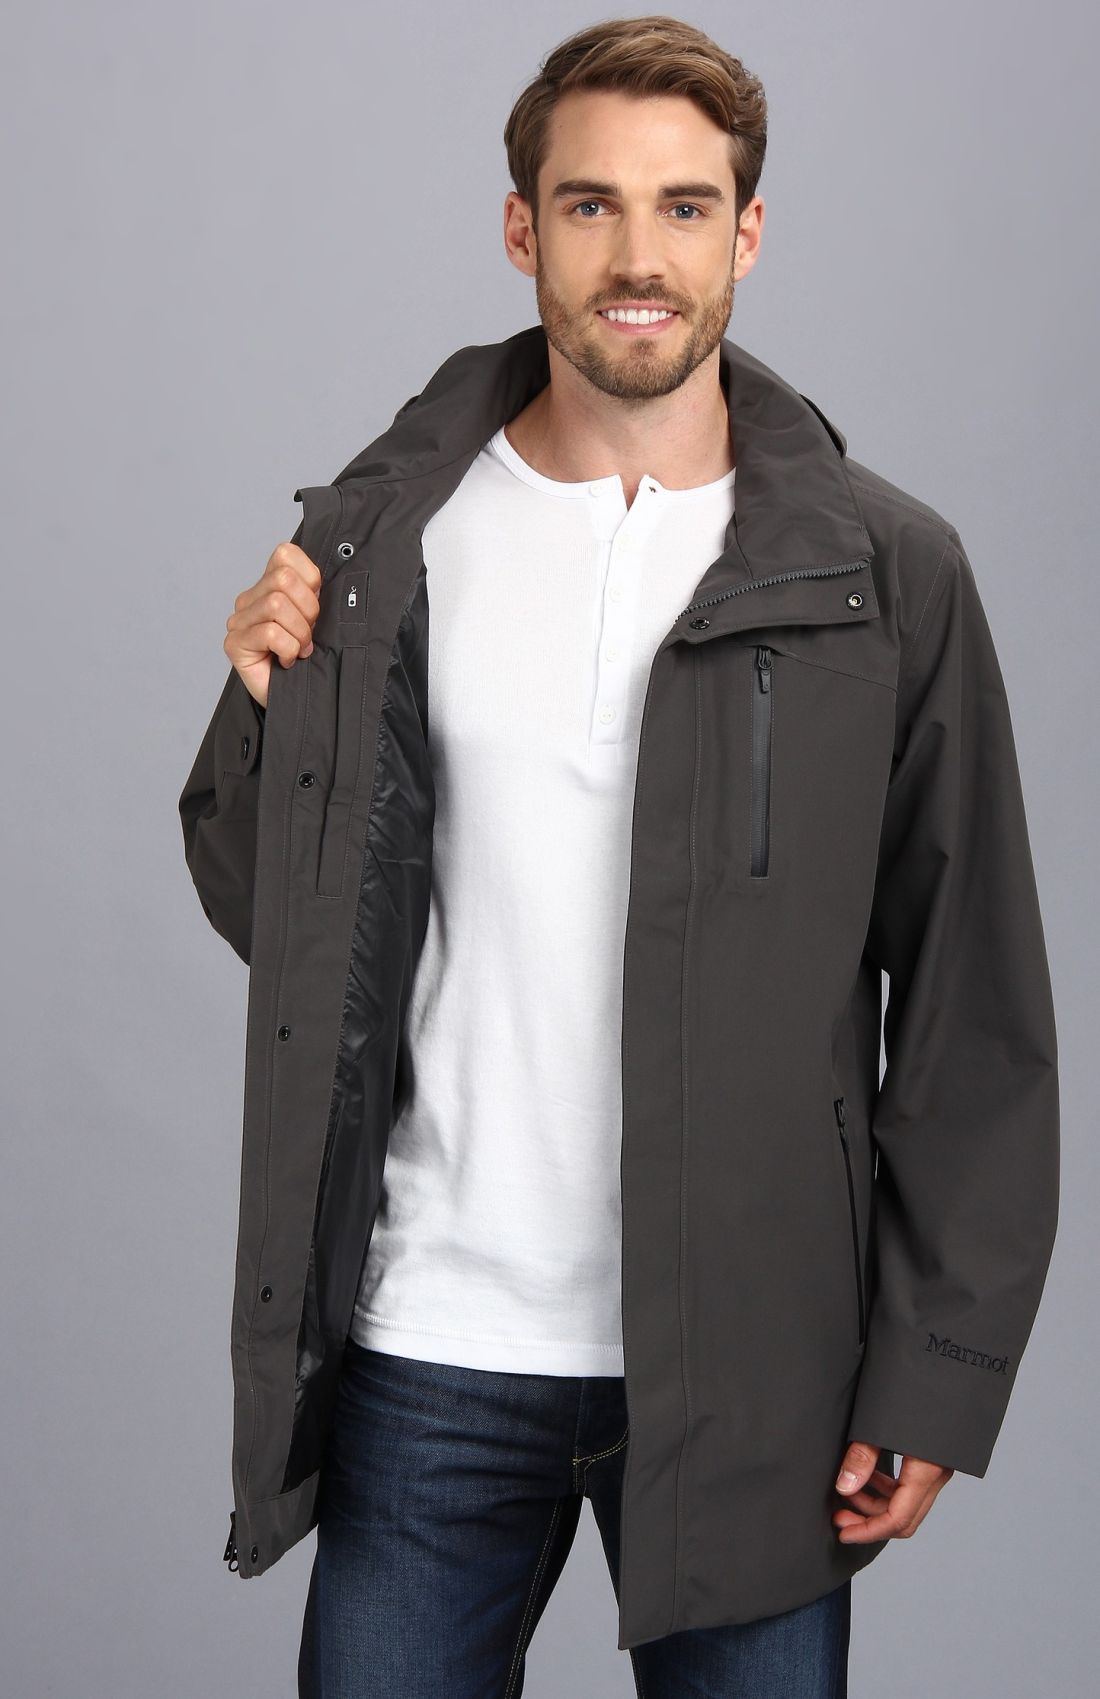 Marmot - Куртка с капюшоном непродуваемая Traveler Jacket